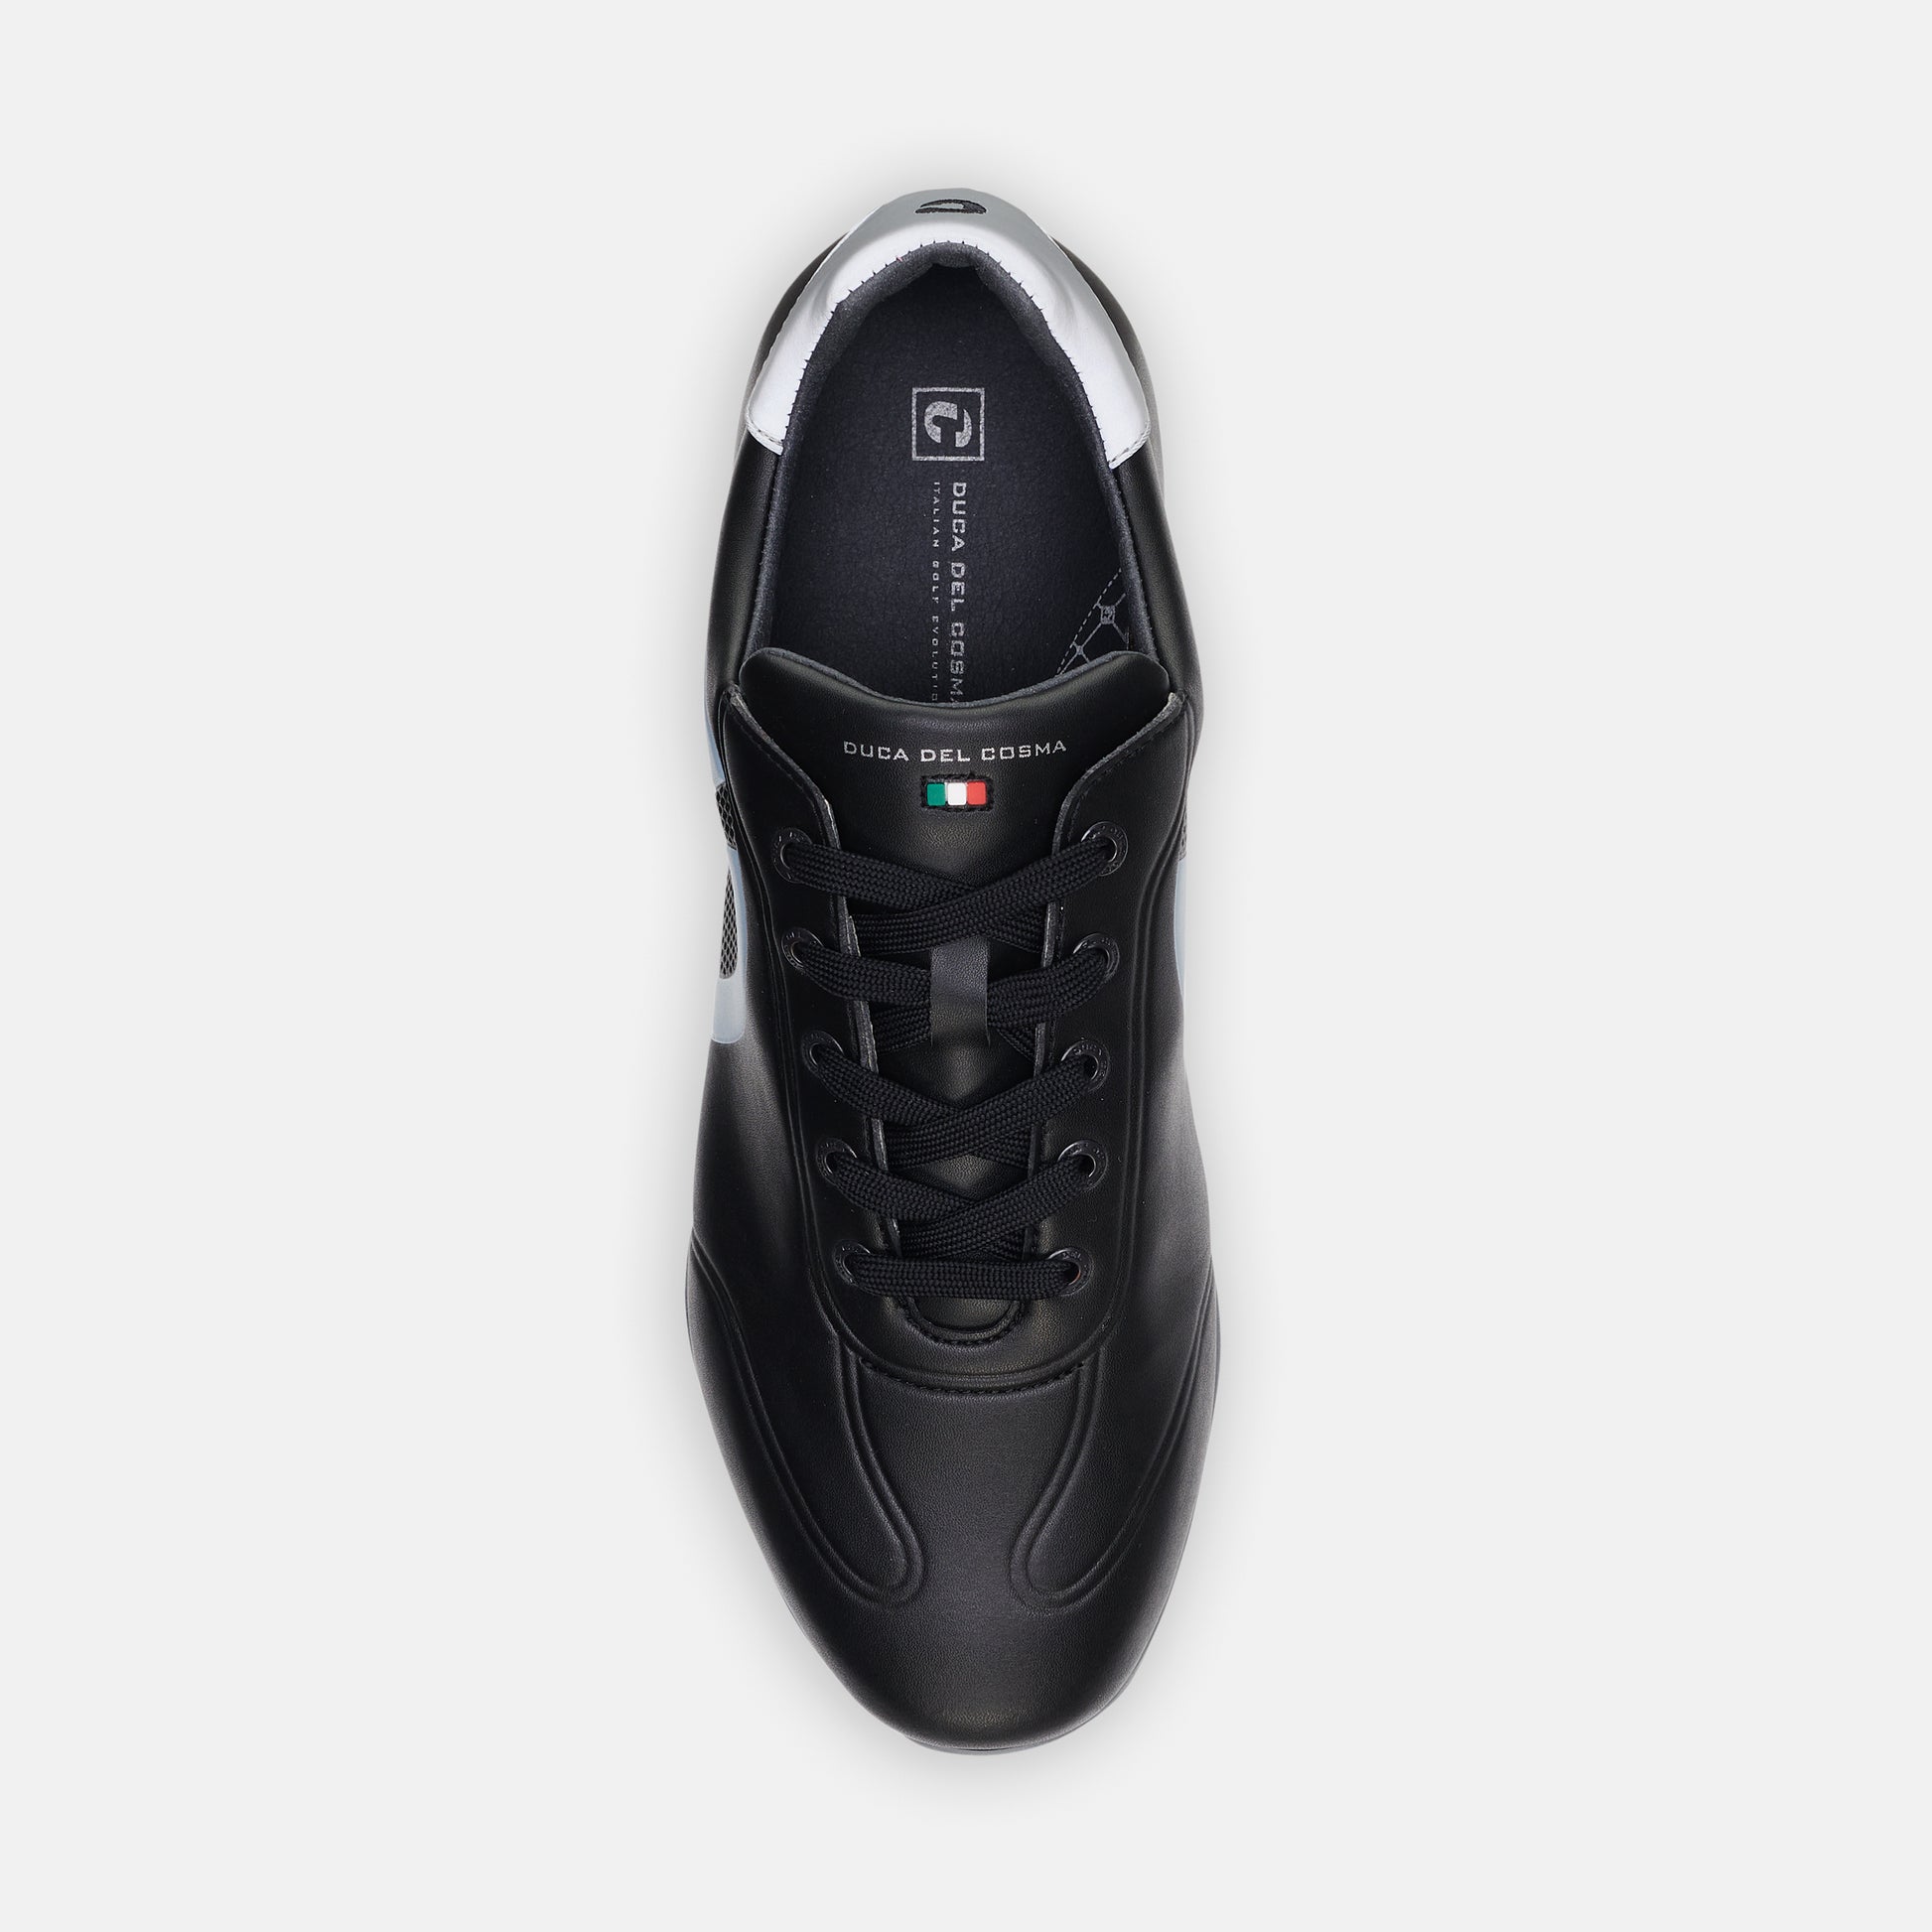 Kingscup waterproof black men's golf shoe best priced golf shoe